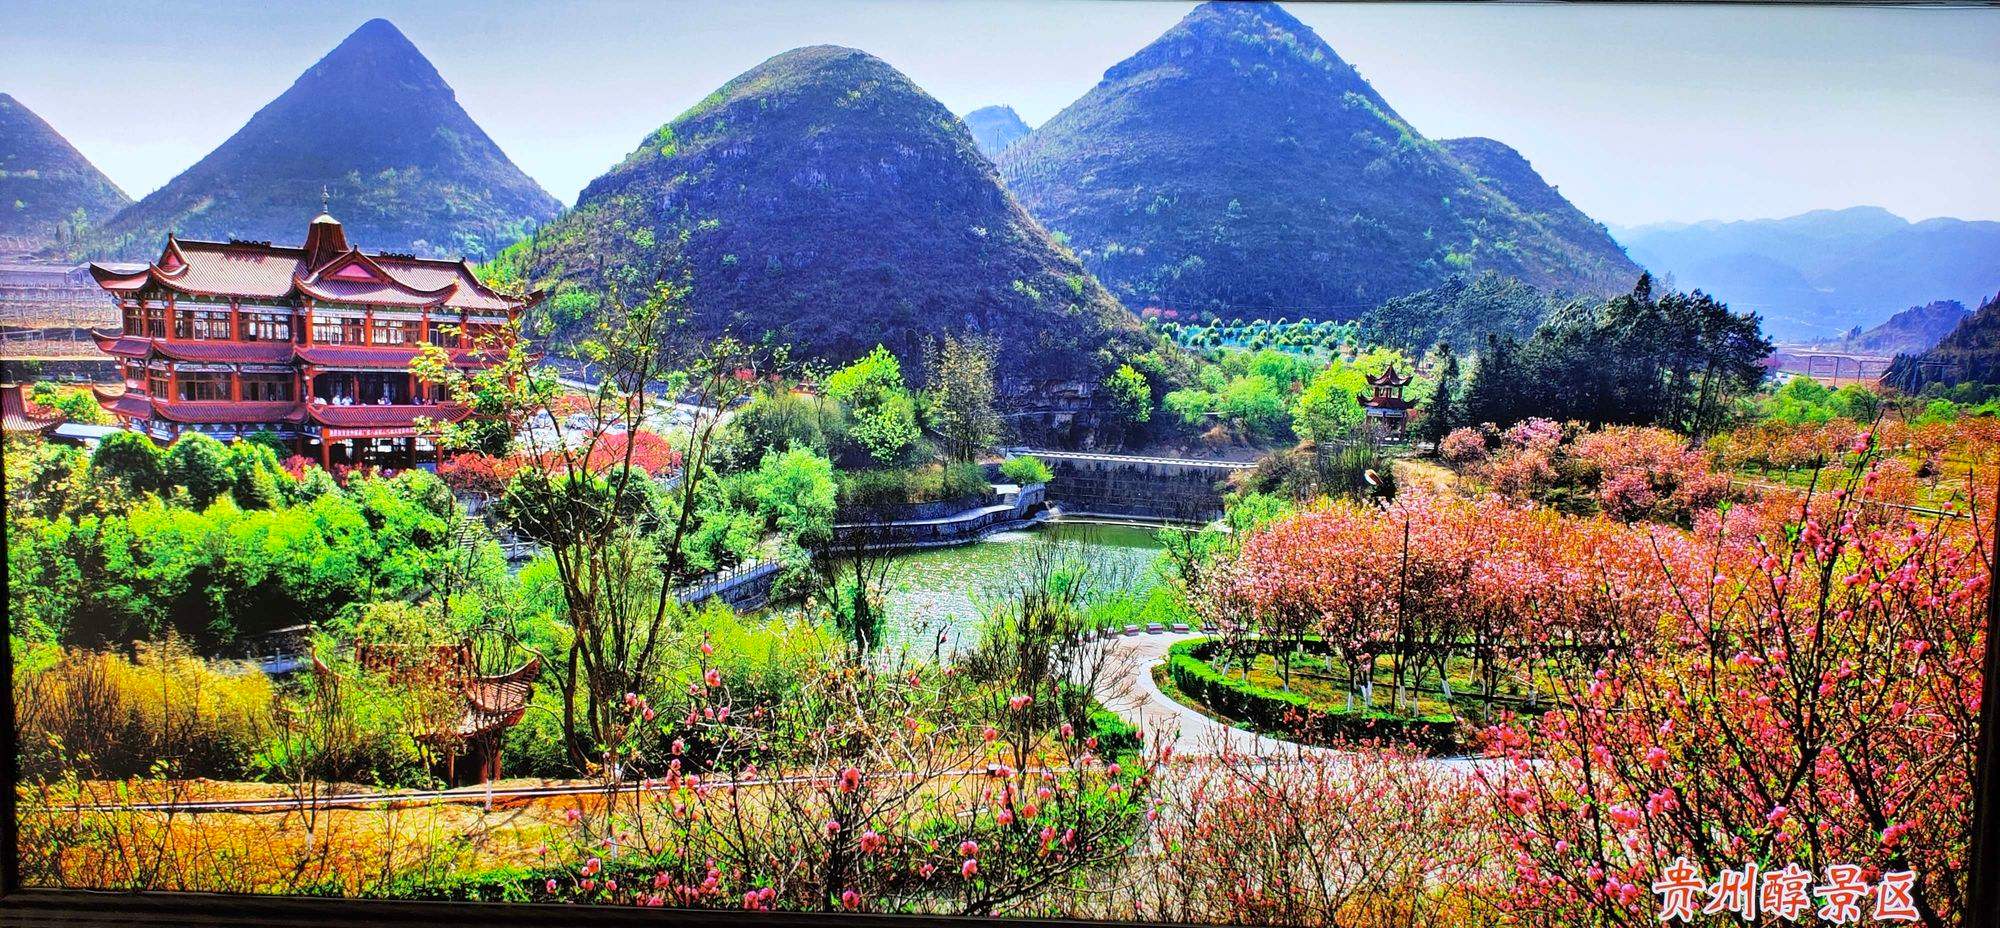 贵州黔西南州兴义市万峰林景区:自然之美与人文之韵的完美结合  亲爱